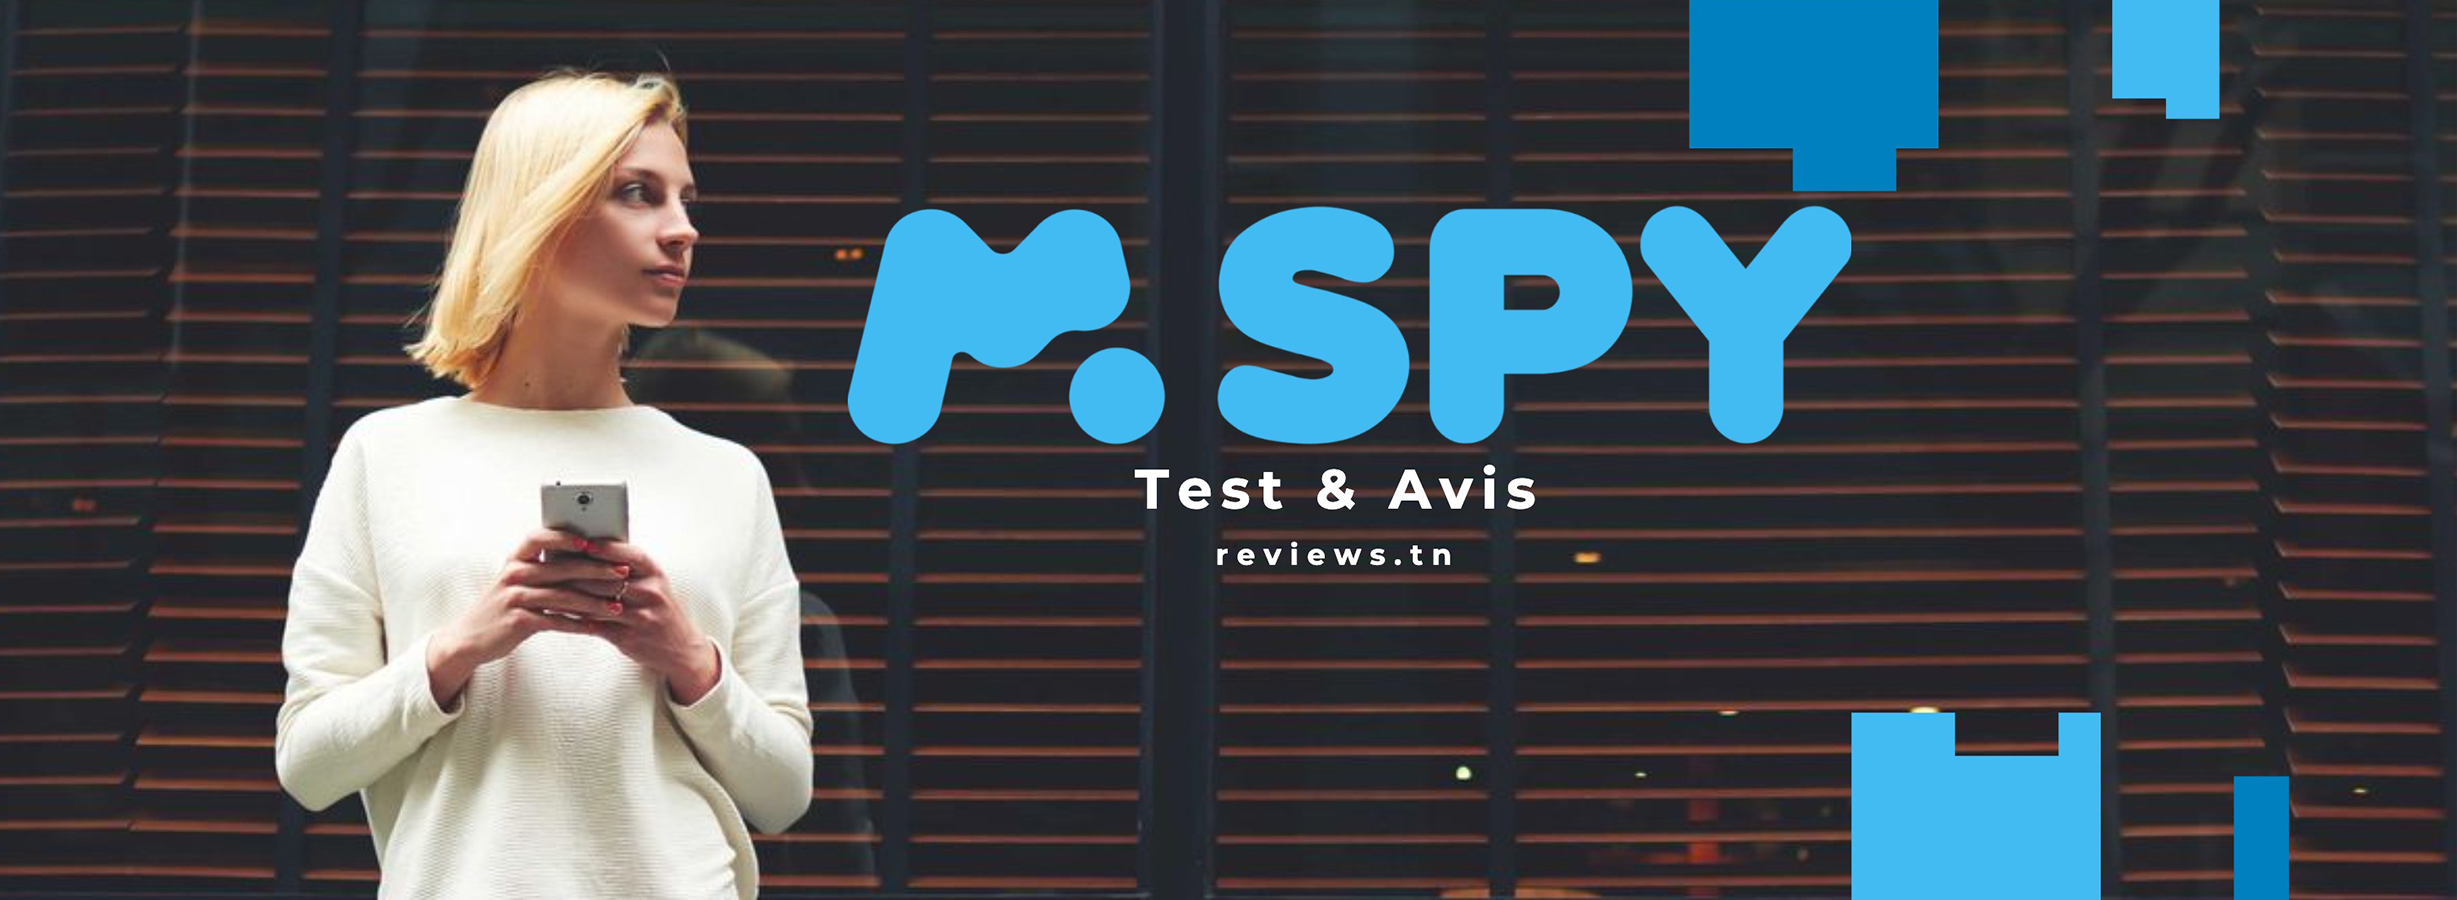 mSpy Review: Ist es die beste mobile Spionagesoftware? Lesen Sie vor dem Kauf